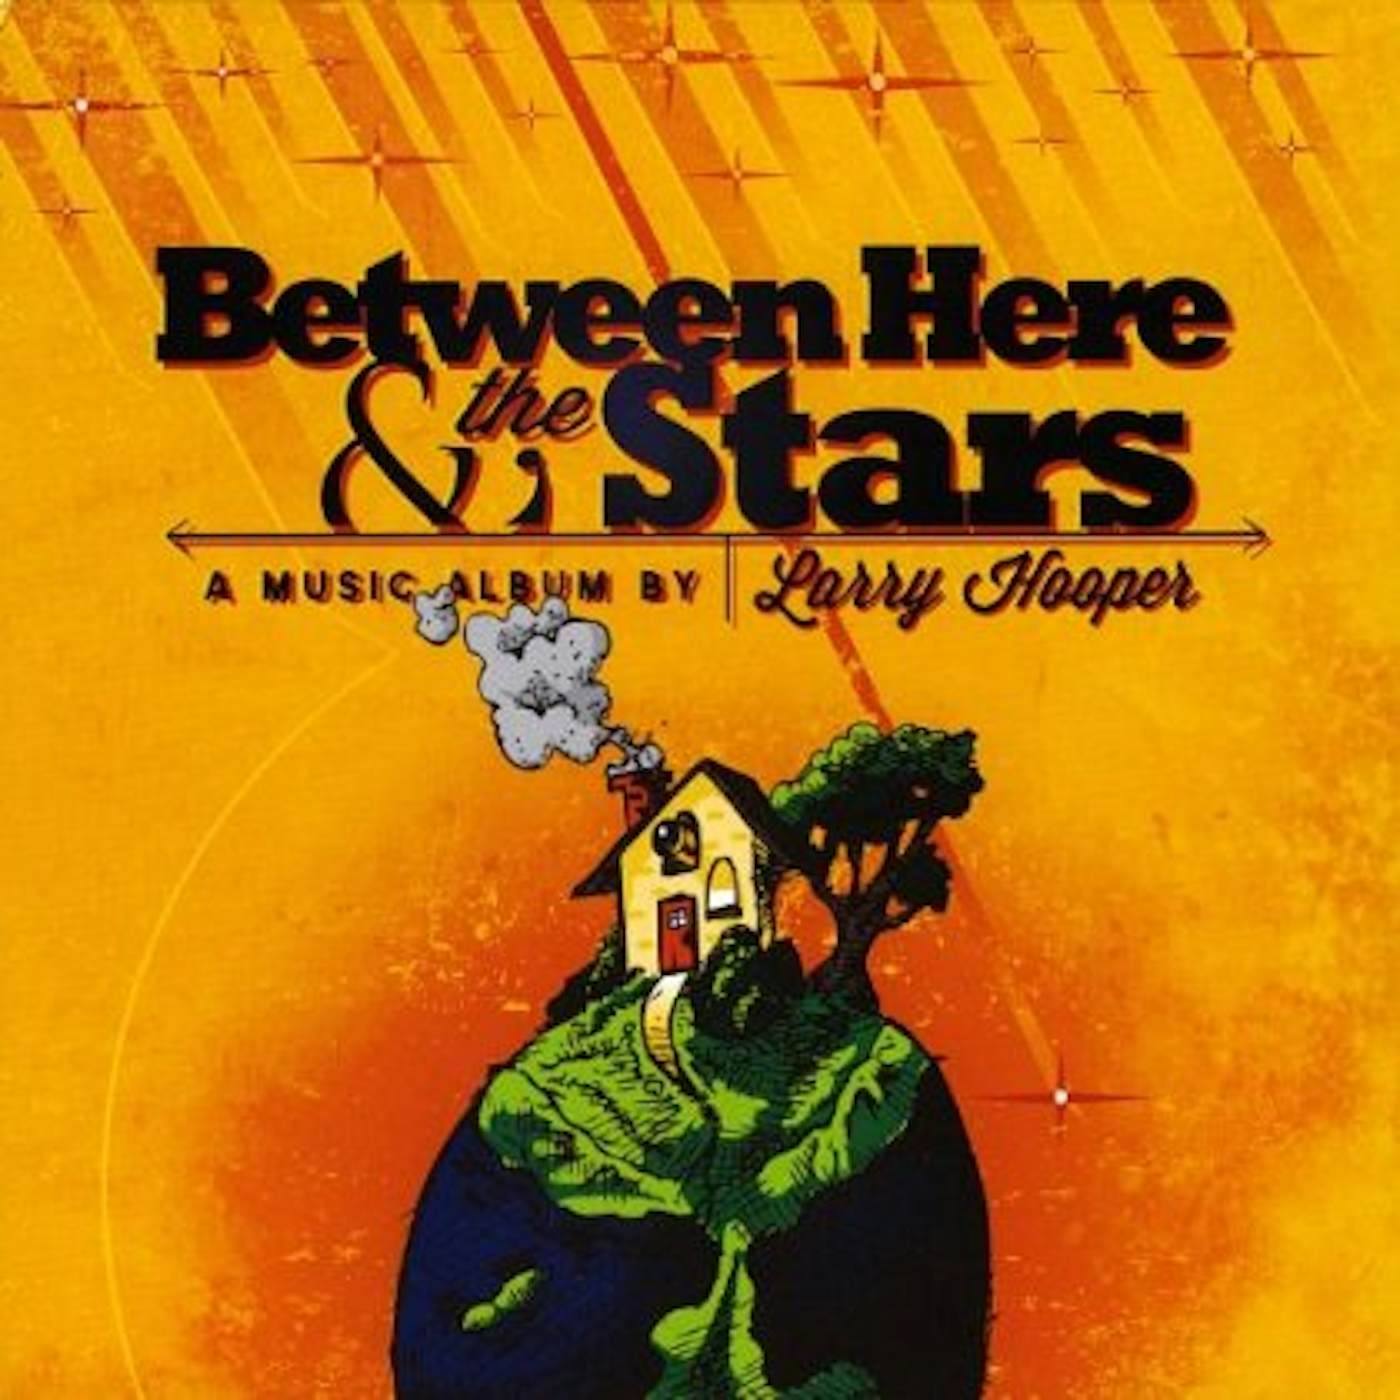 Larry Hooper BETWEEN HERE & THE STARS CD